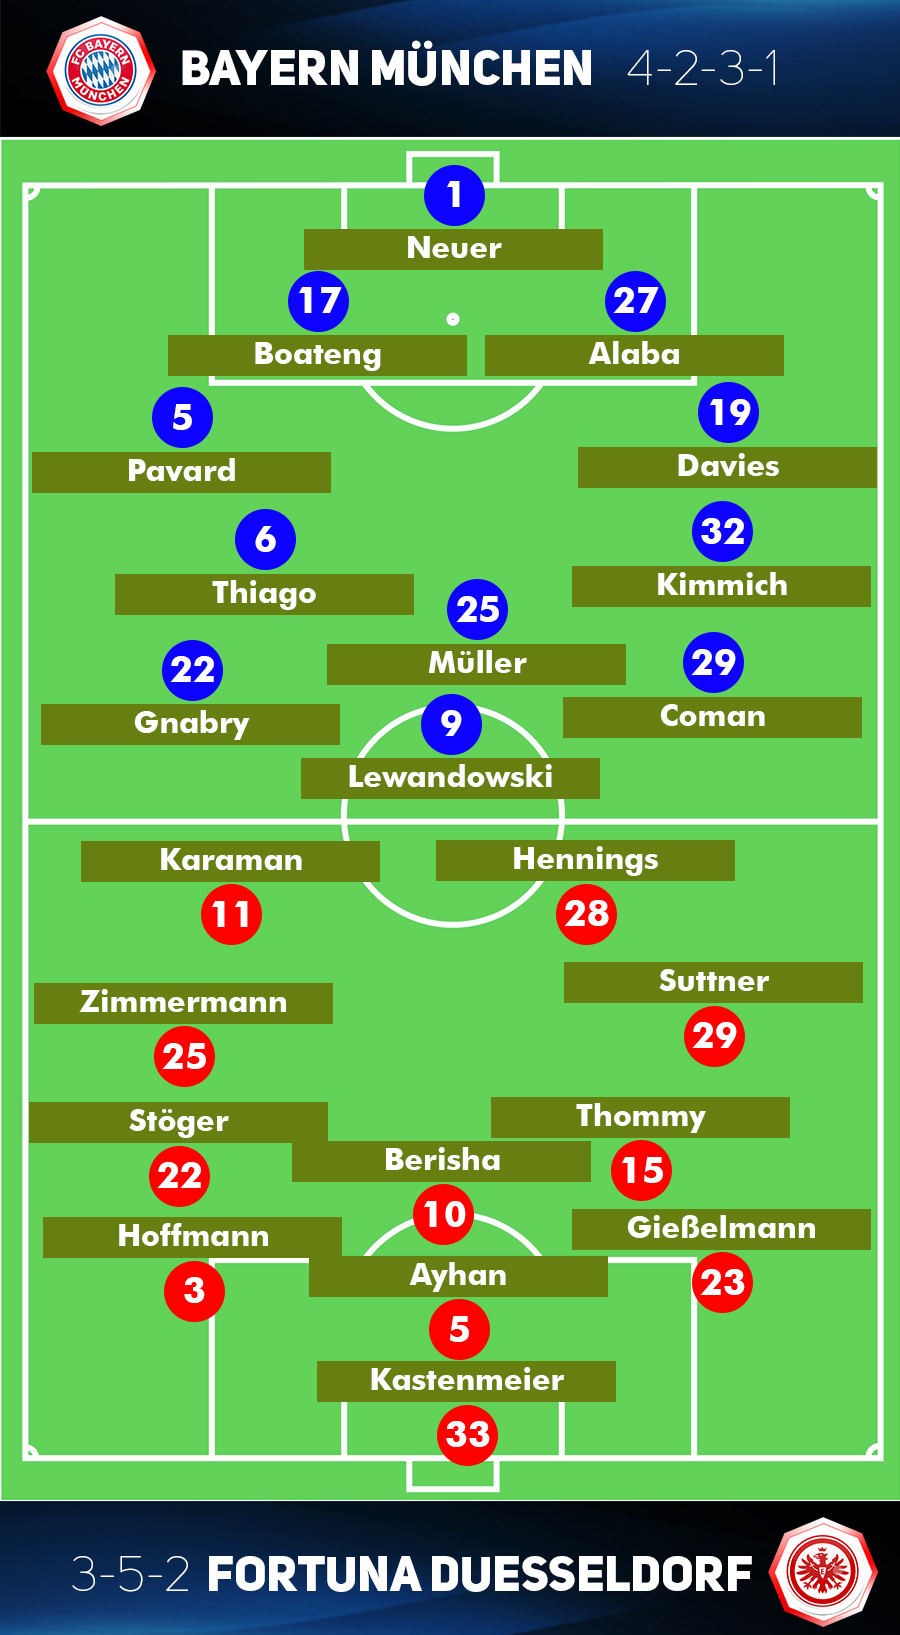 Bayern Munich vs Fortuna Duesseldorf line up